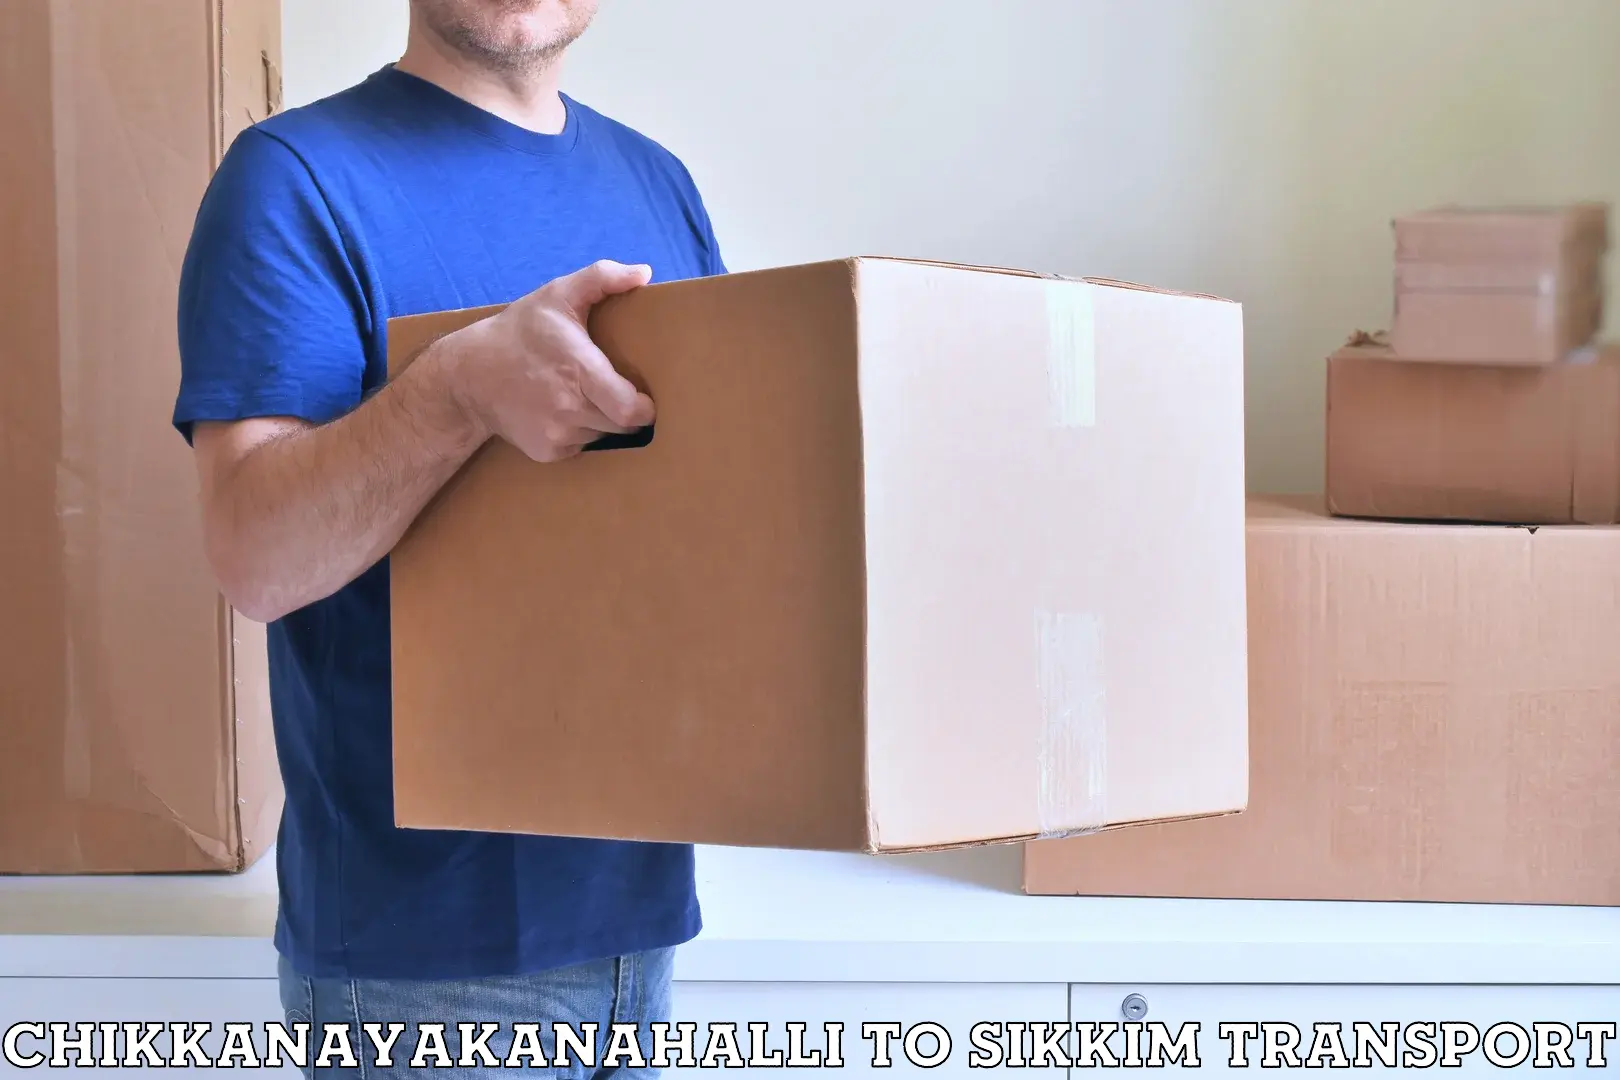 Furniture transport service Chikkanayakanahalli to Pelling